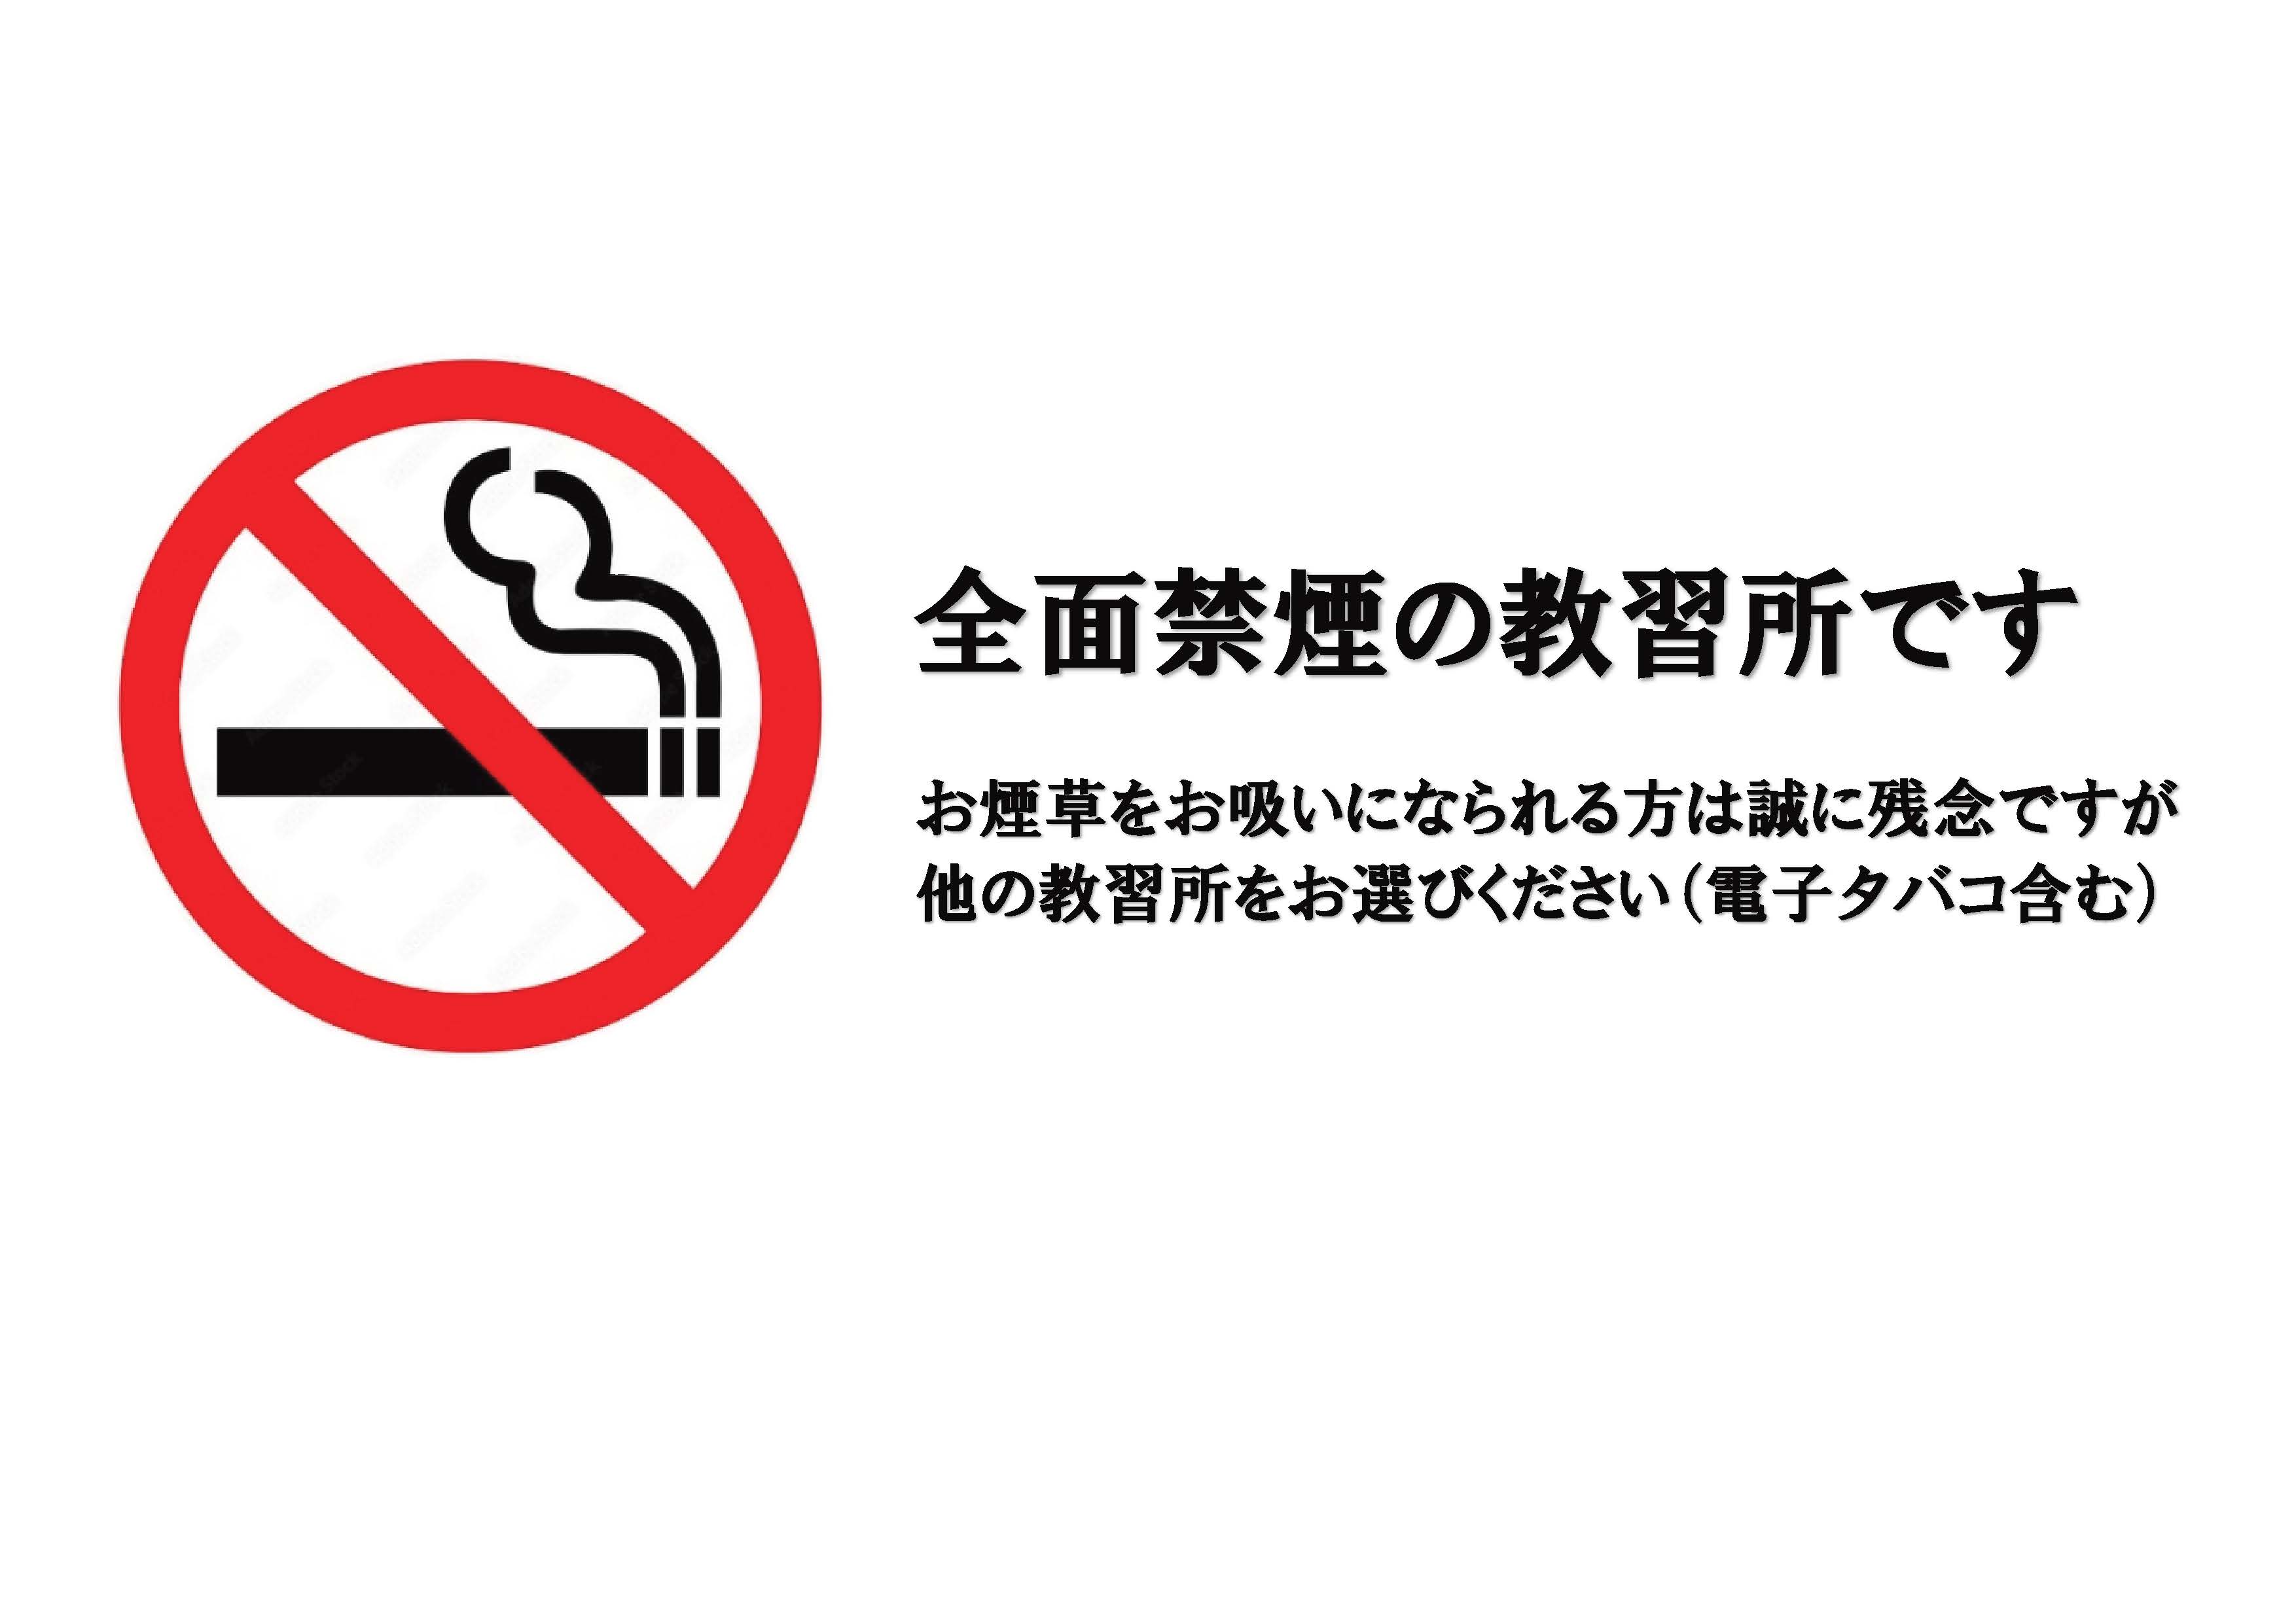 2022年12月より全面禁煙となります